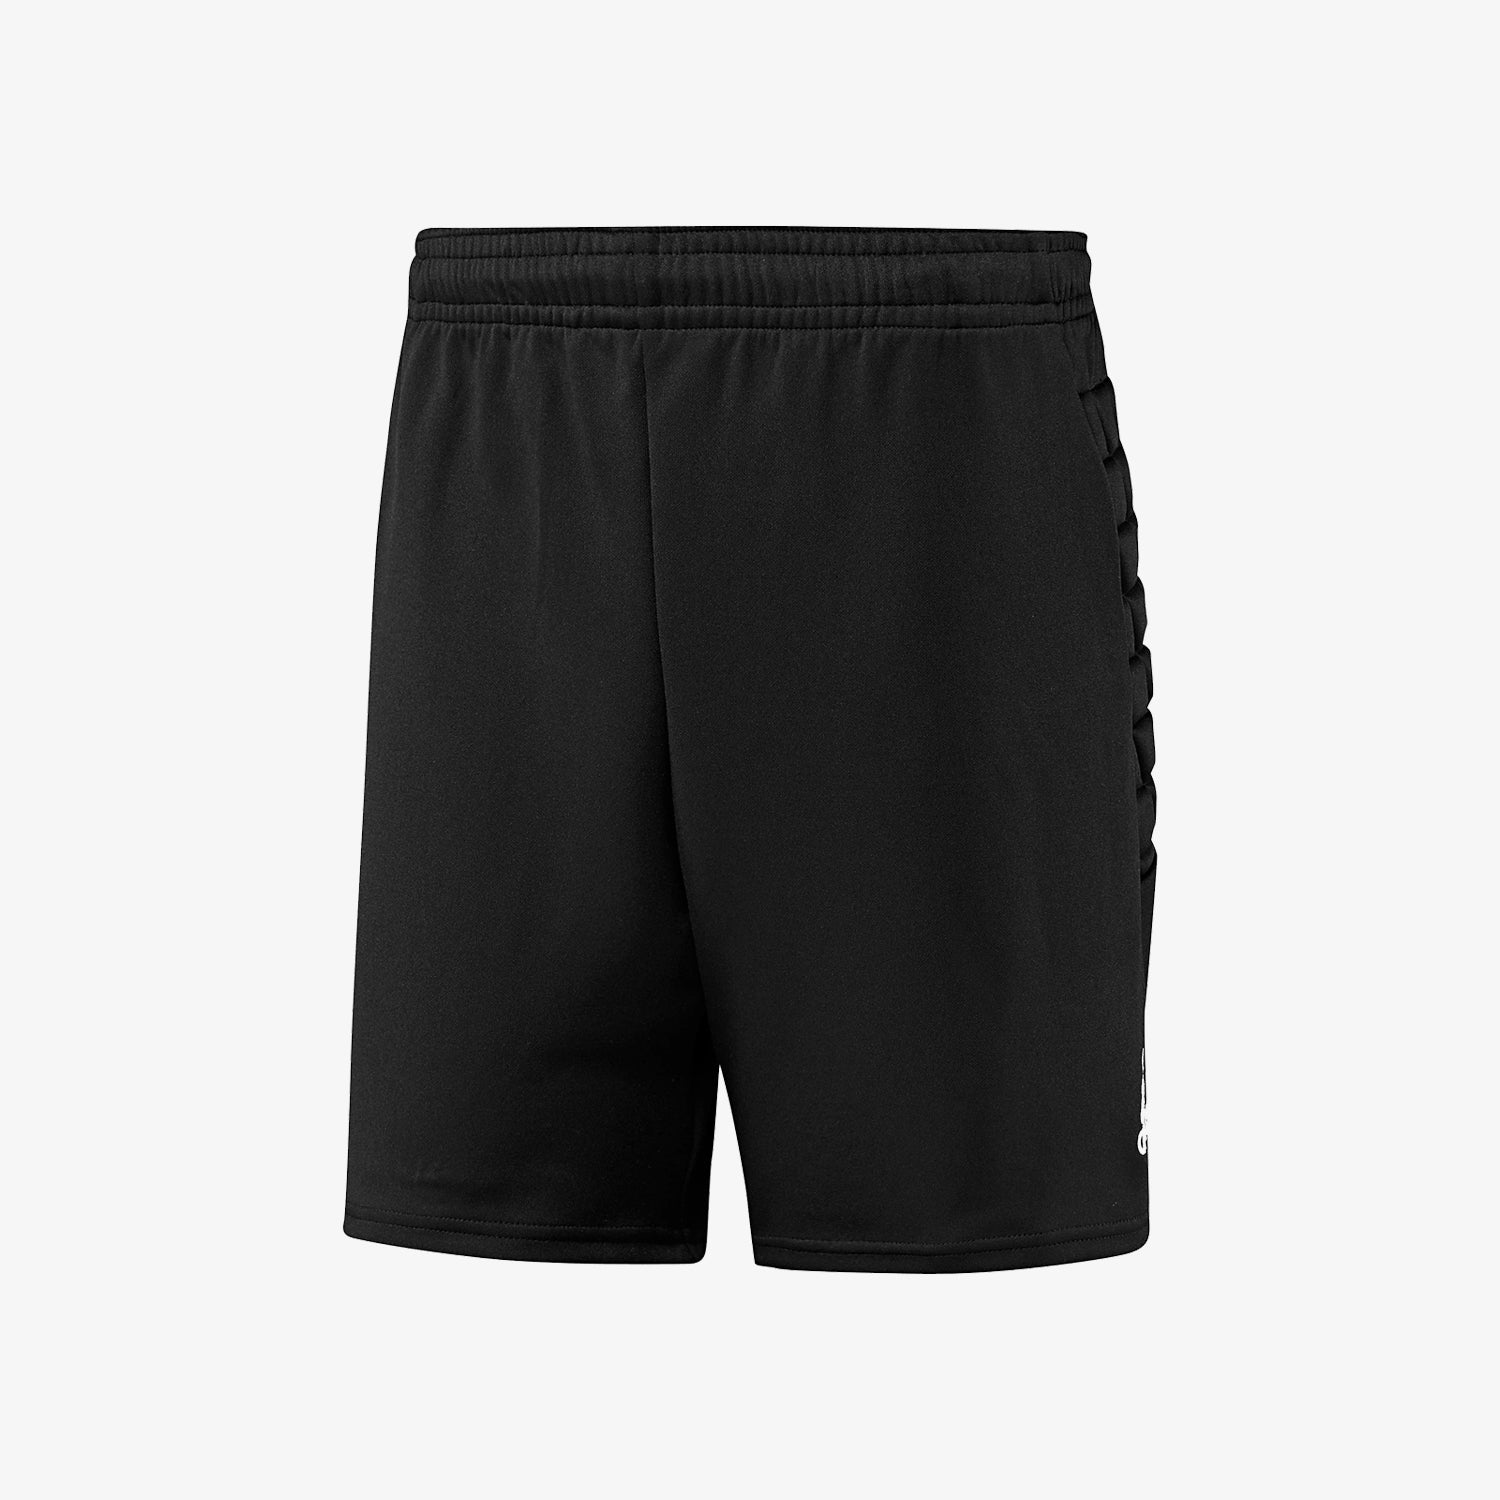 Men's Basic Gk Soccer Short - Black